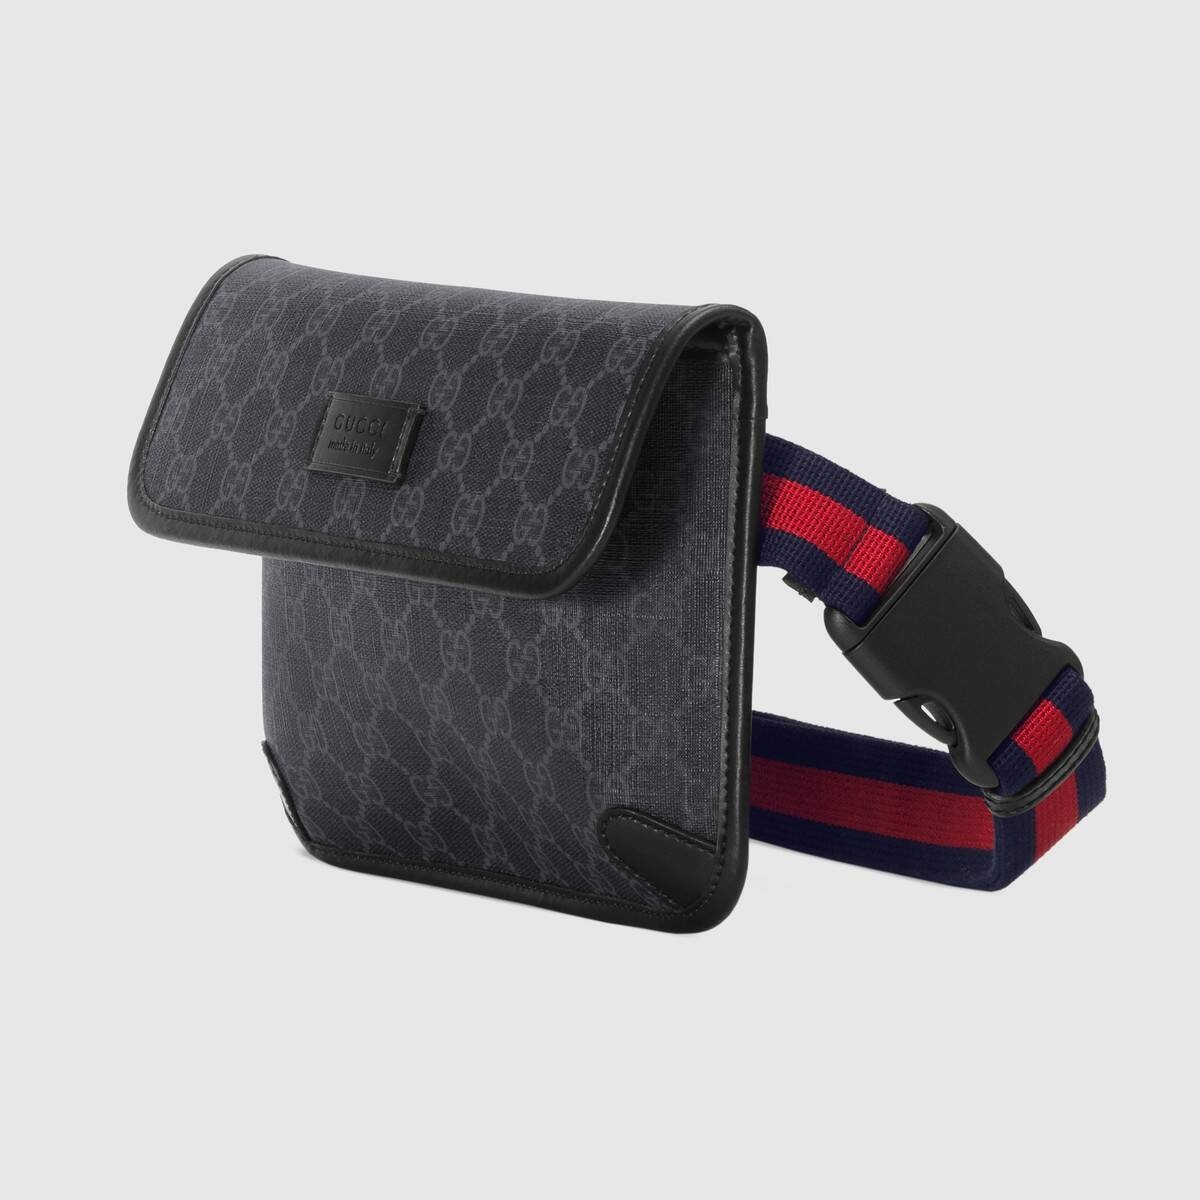 GG Black belt bag - 2